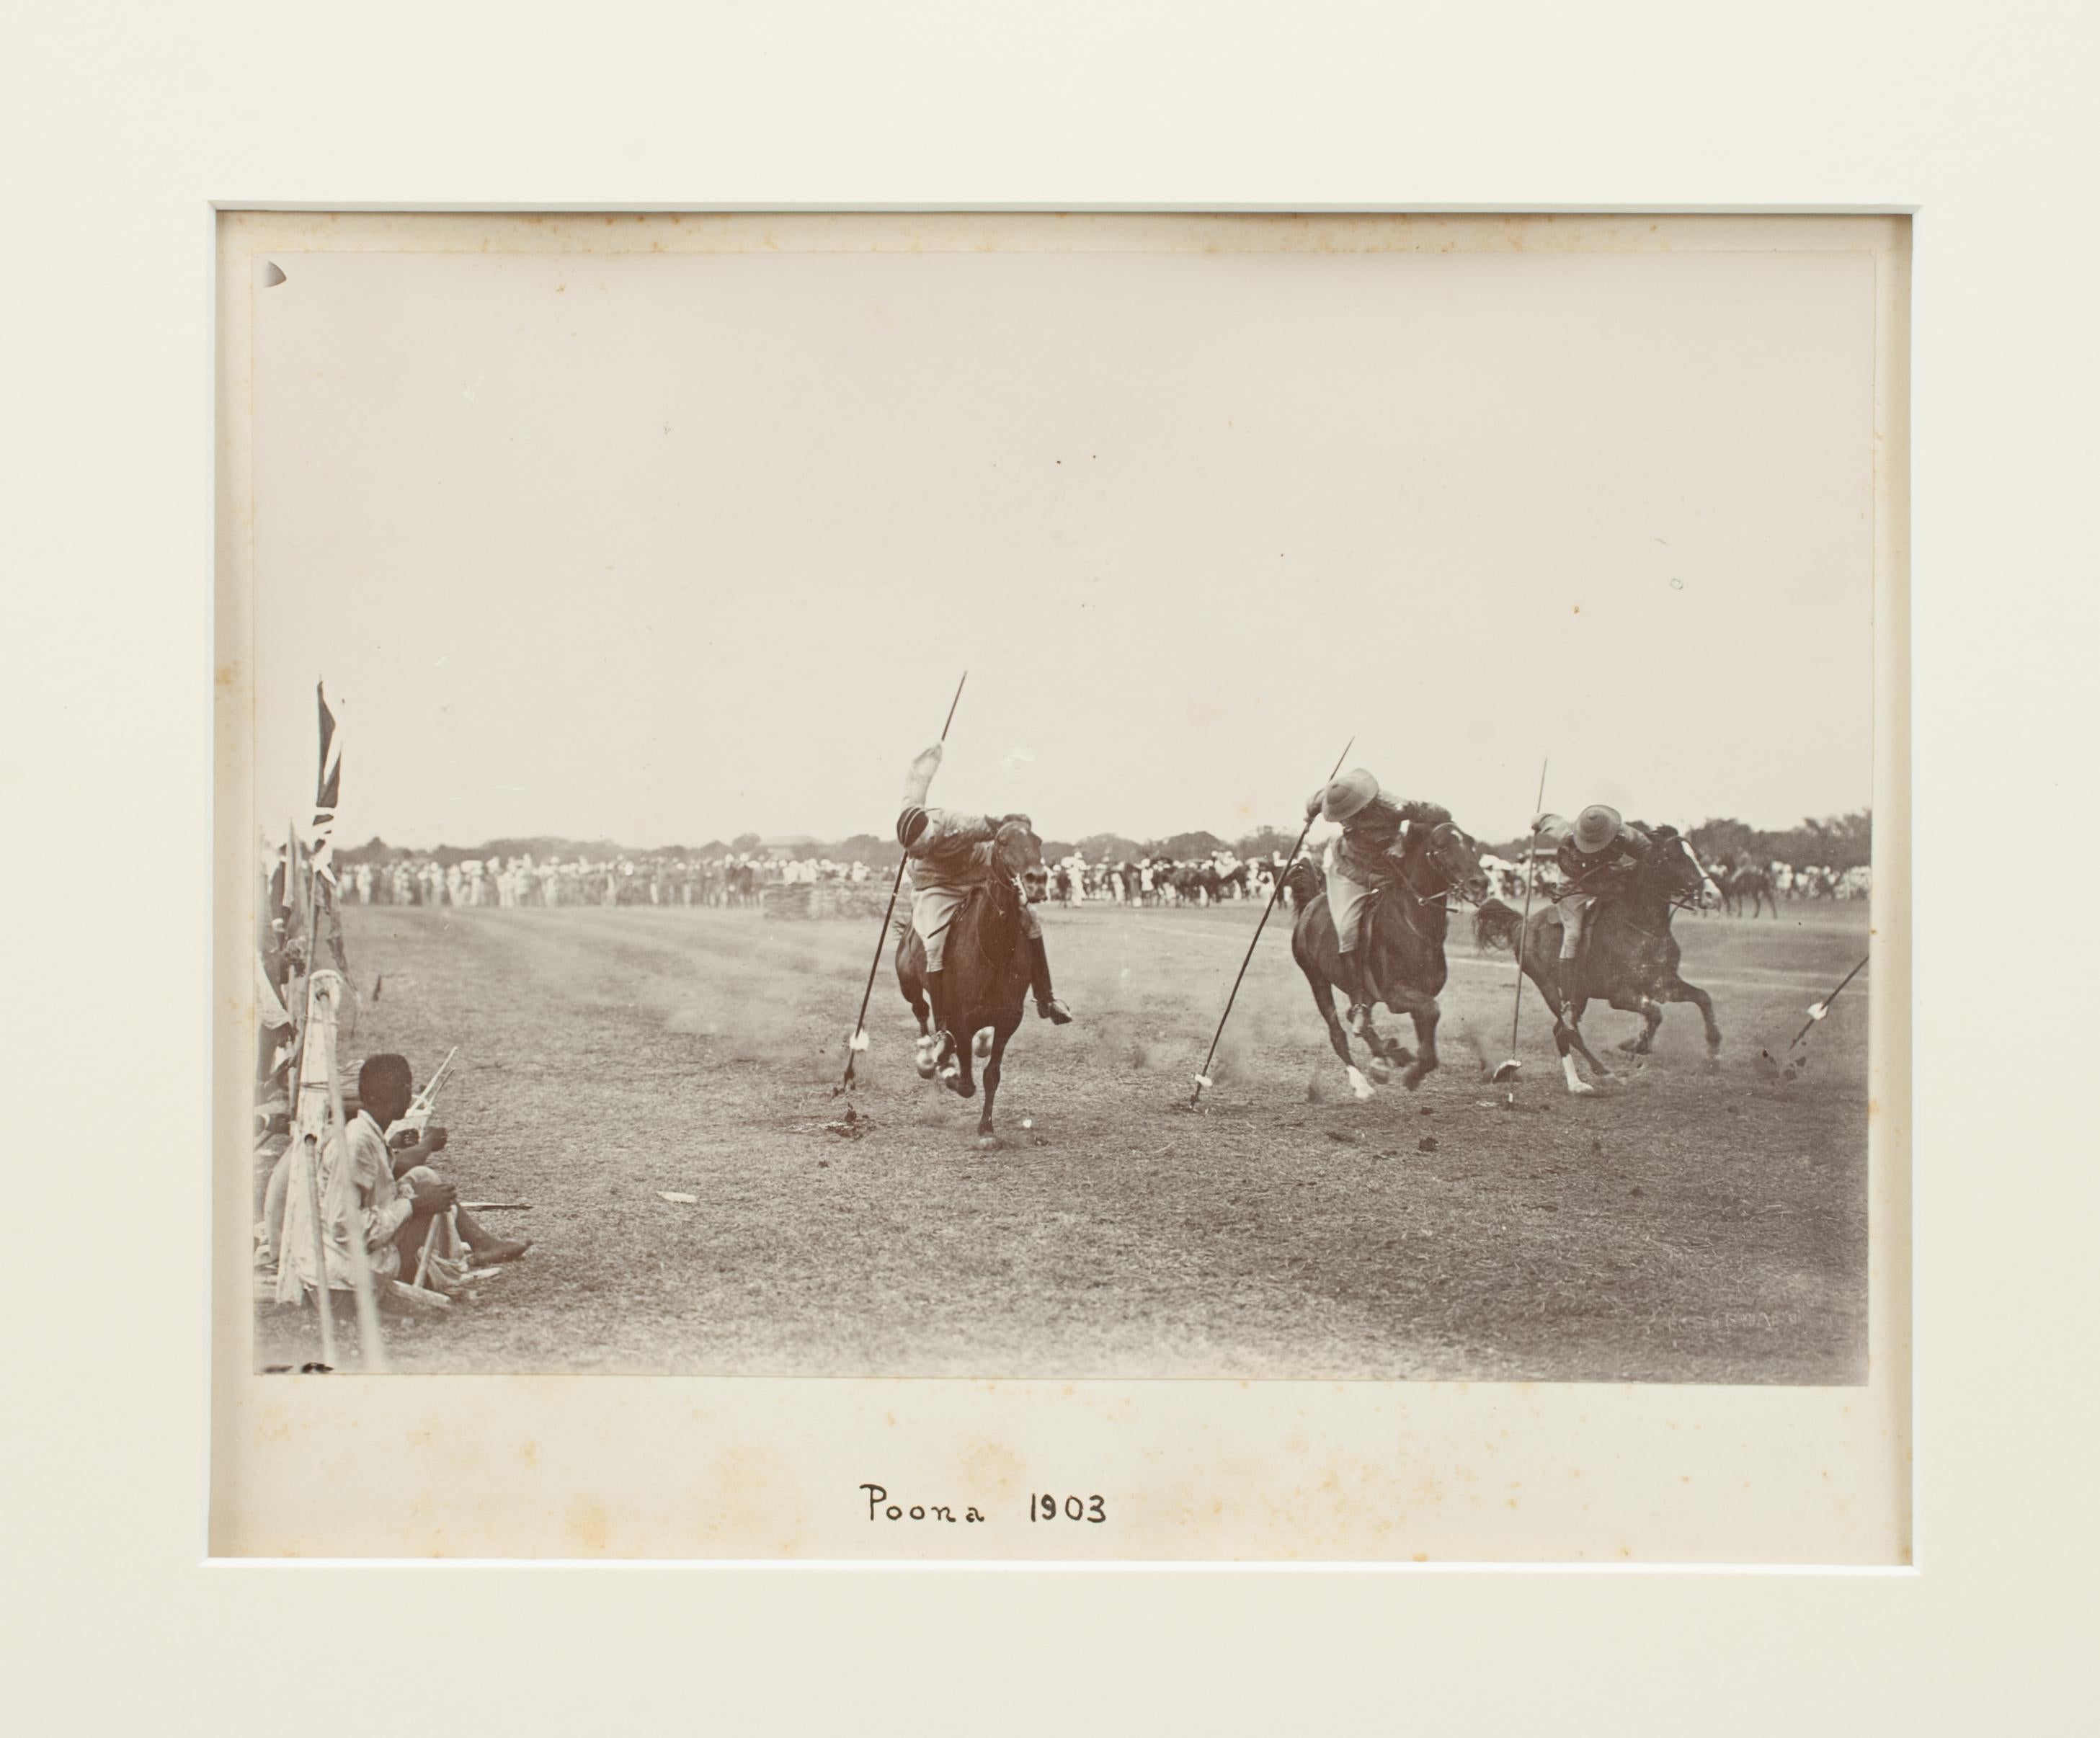 Koloniale Zeltabsteckung Fotografie, Poona 1903.
Seltene sepia getönte spätviktorianische Kolonialfotografie, die eine Gruppe von Reitern beim 